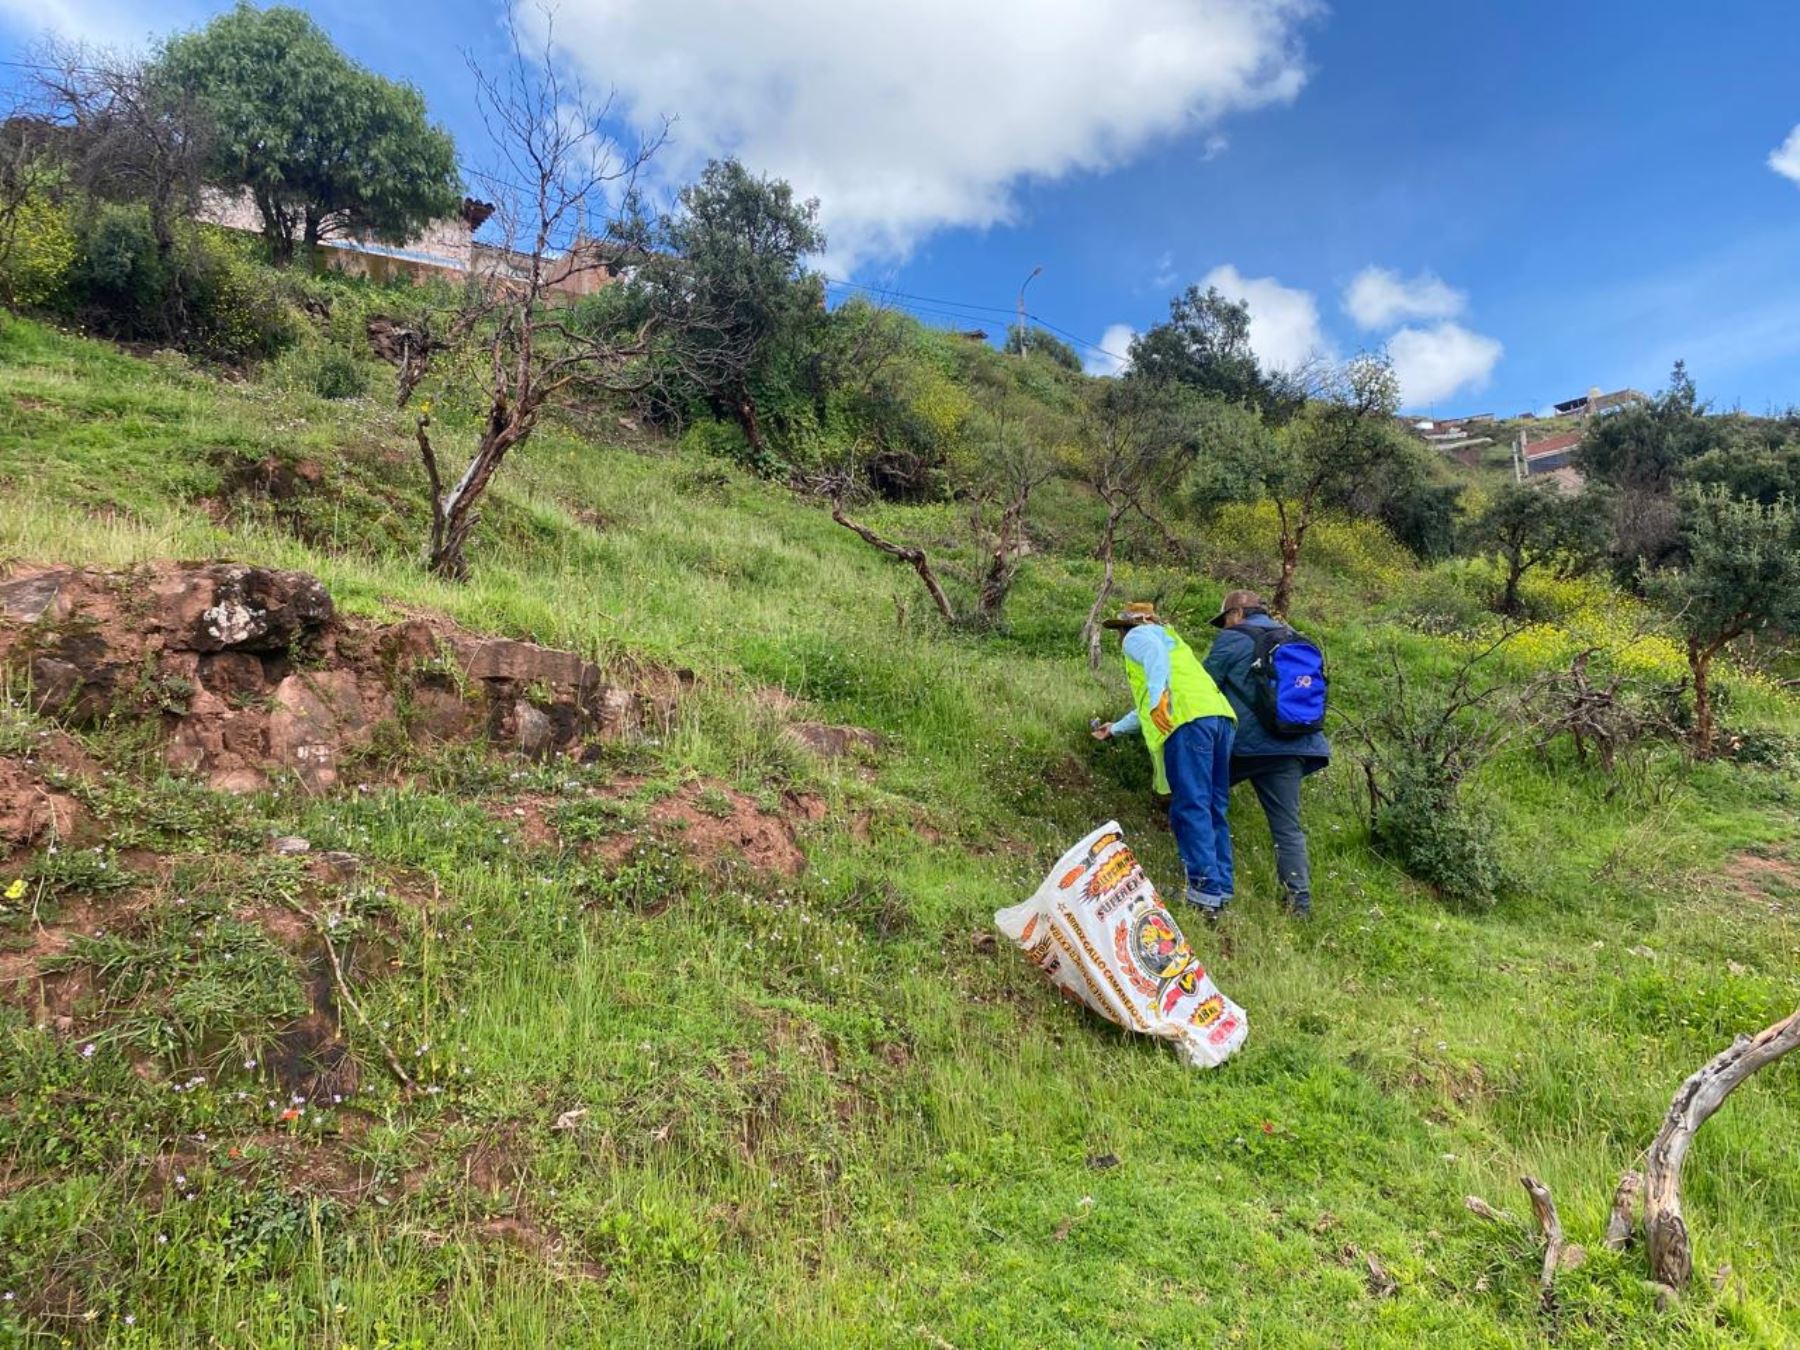 Pobladores del distrito de Santiago participaron de la jornada de limpieza y retiro de residuos sólidos del monumento arqueológico Pukin situado en esa jurisdicción ubicada en la provincia de Cusco.